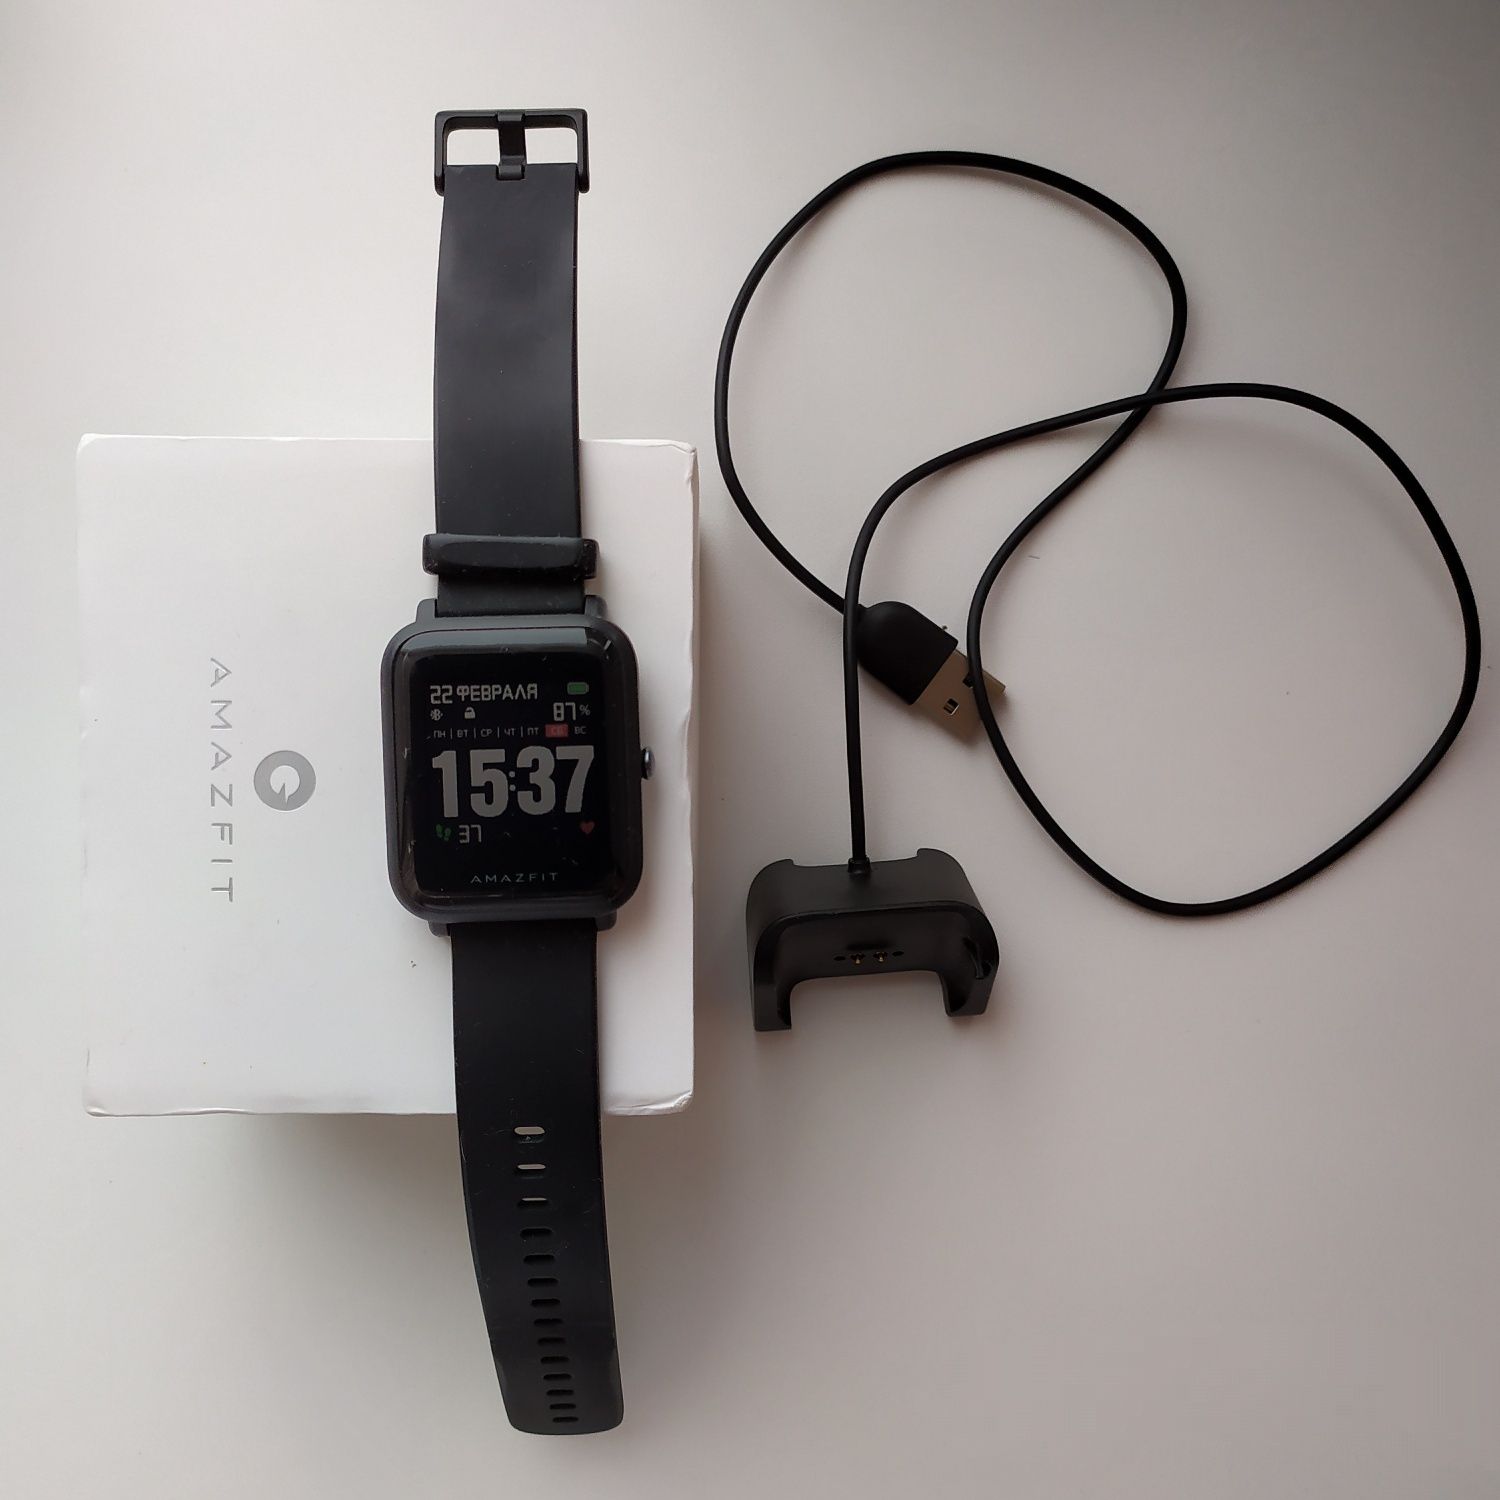 Умные часы от Xiaomi AMAZFIT. Обмен на ликвид или продам.